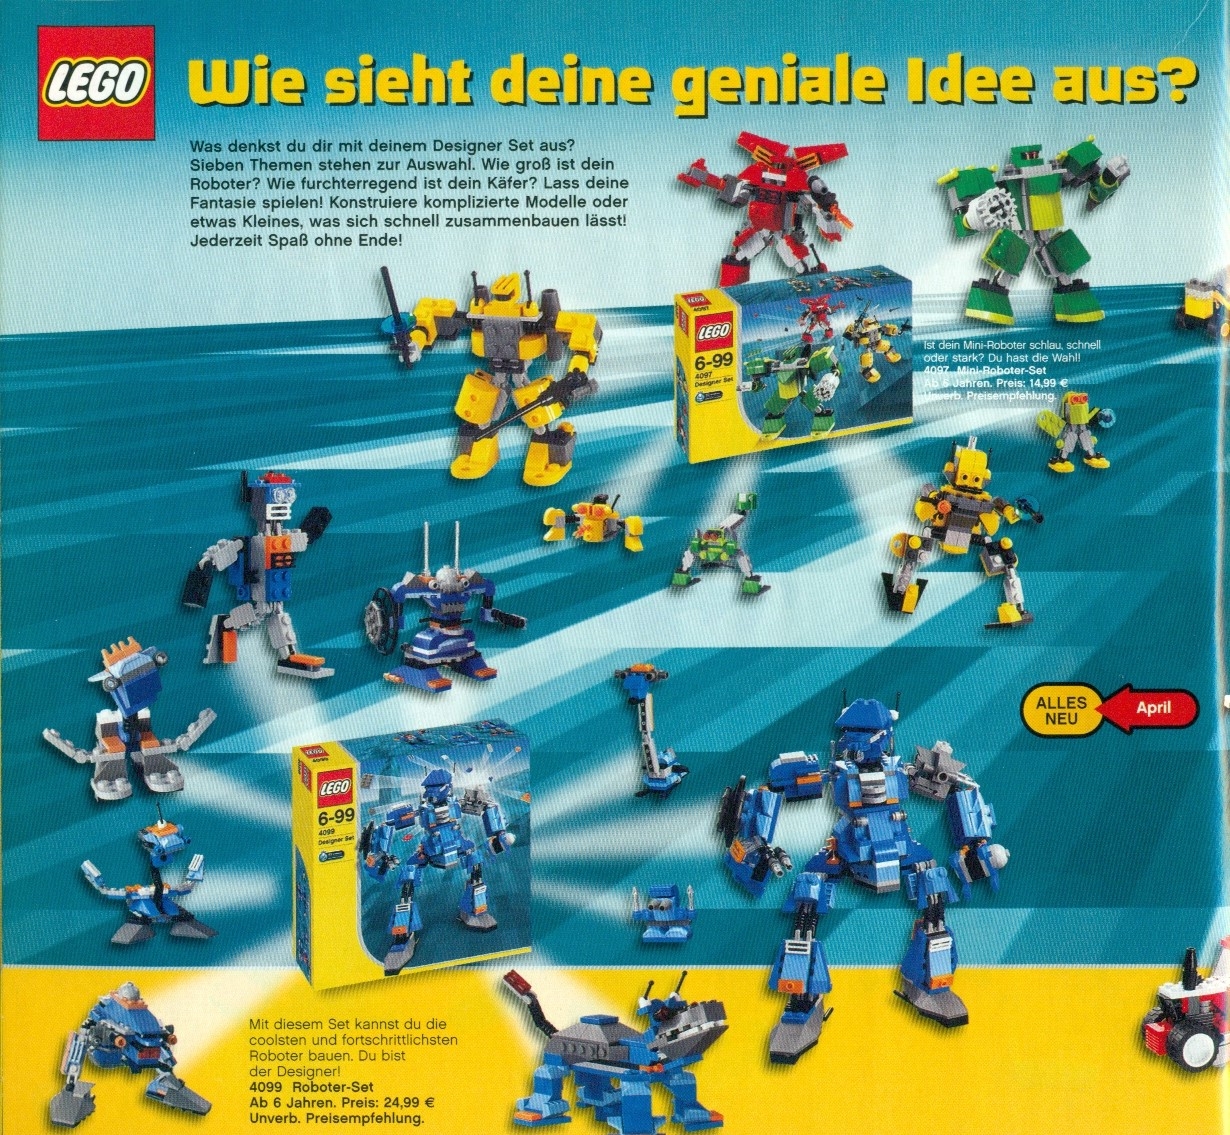 lego catalog 2003